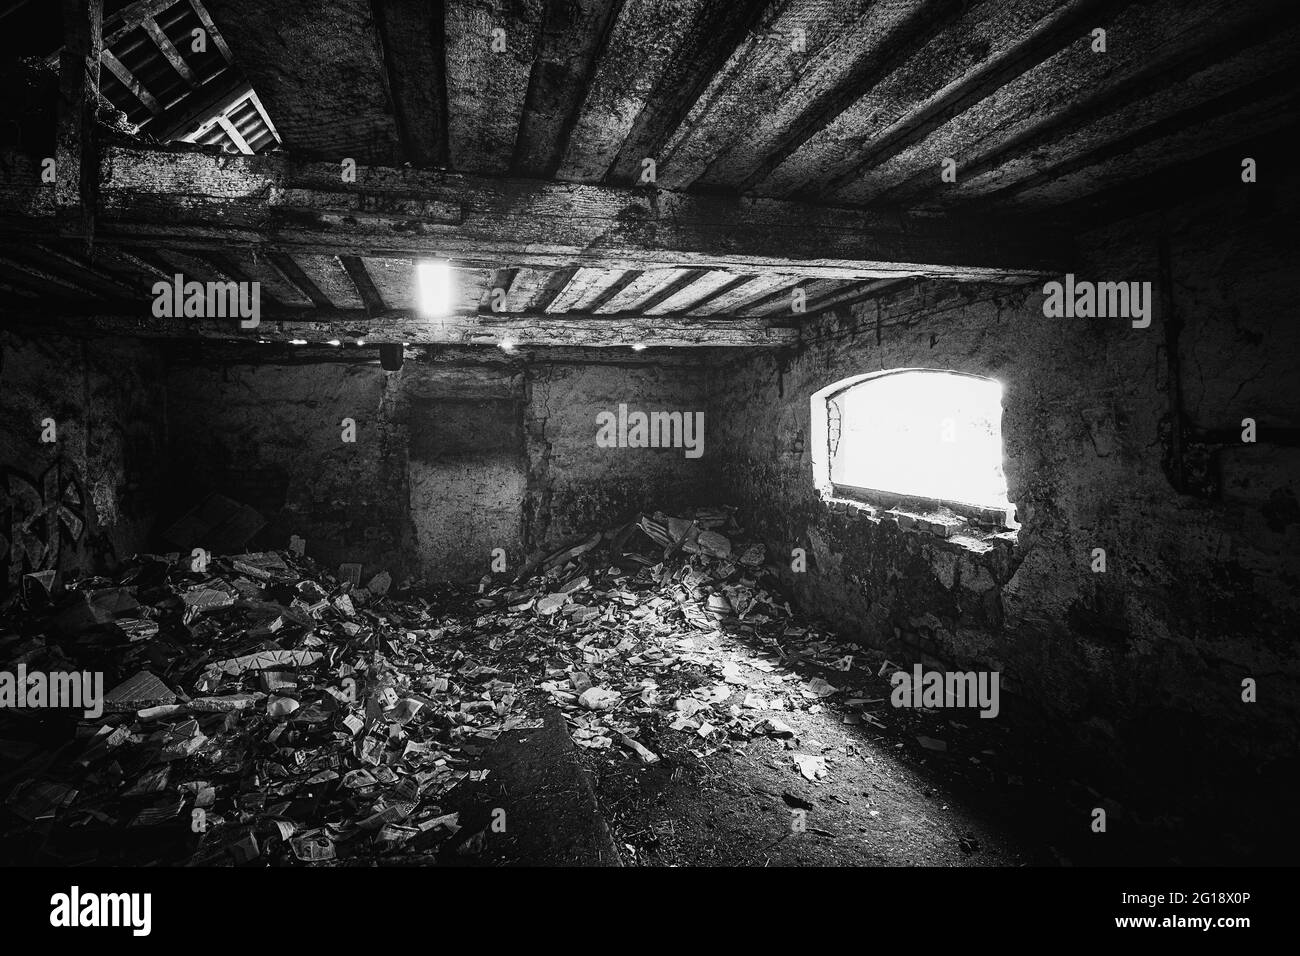 Alptraum Horror Keller in einer alten, verlassene Scheune im 'The Blair Witch Project' Stil. Leerstehende, unbewohnte Architektur, Abandoned Place Stock Photo